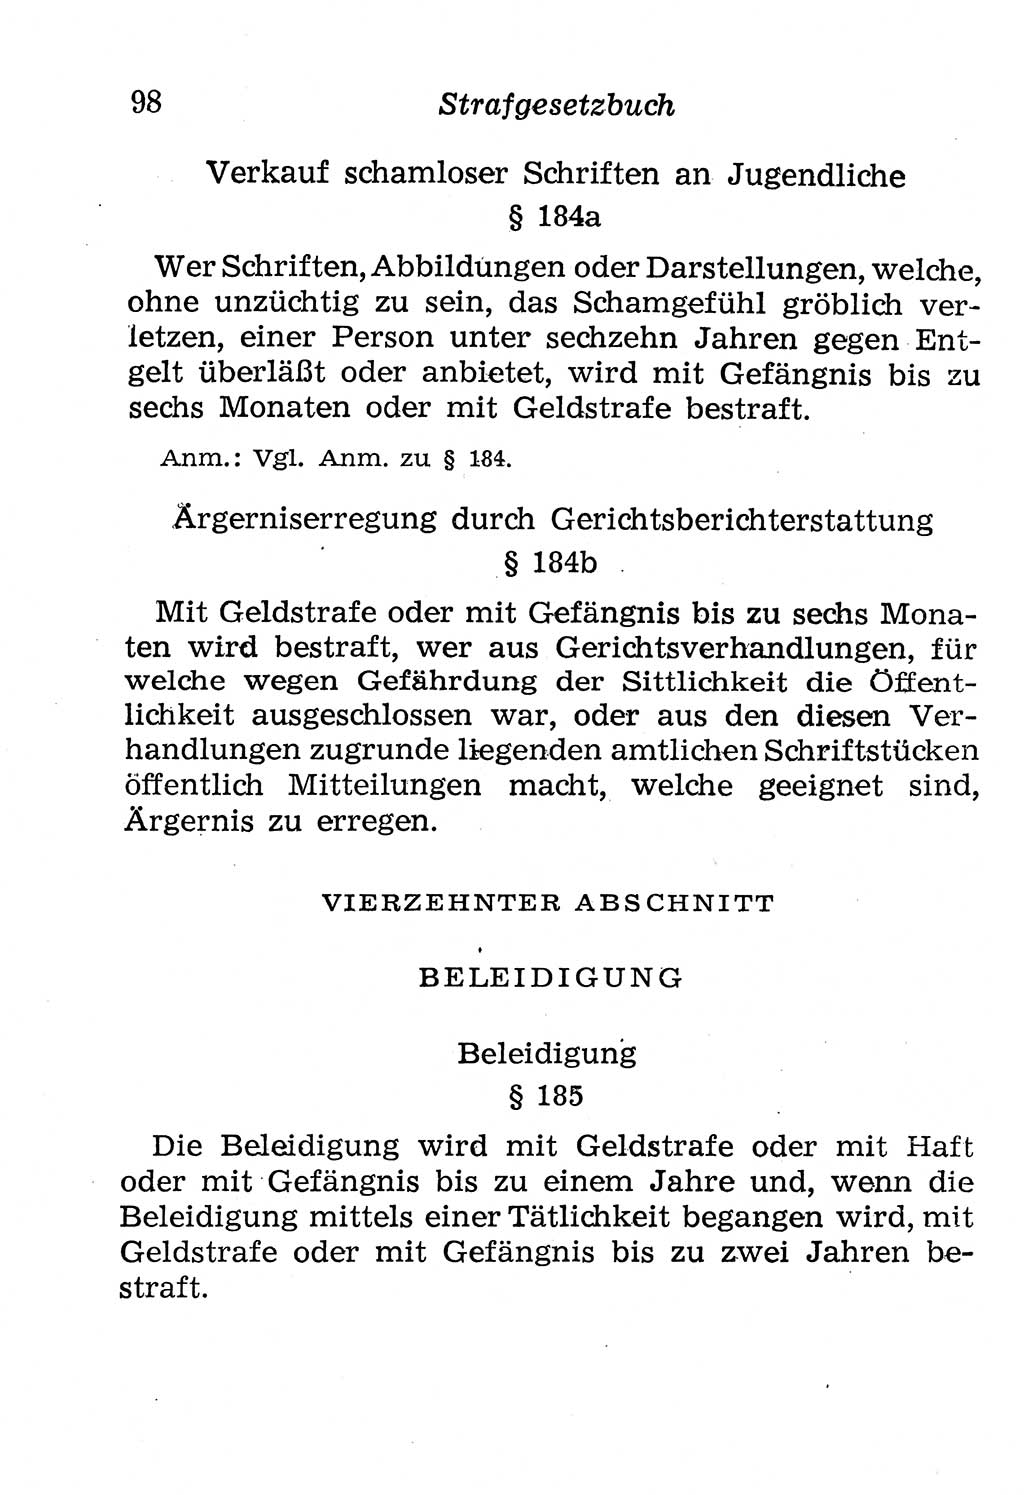 Strafgesetzbuch (StGB) und andere Strafgesetze [Deutsche Demokratische Republik (DDR)] 1958, Seite 98 (StGB Strafges. DDR 1958, S. 98)